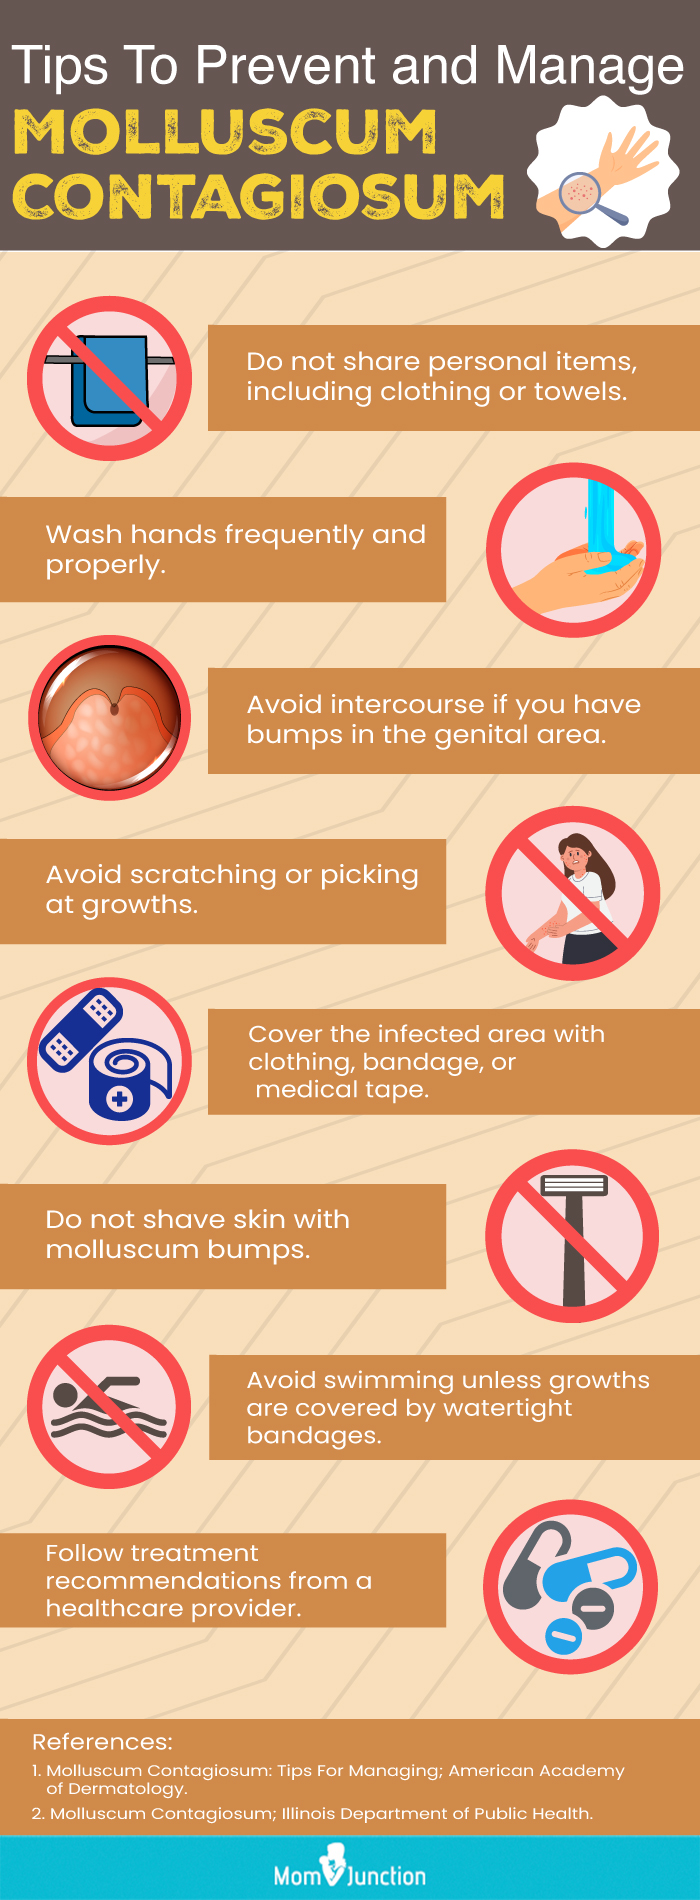 tips to prevent & manage molluscum contagiosum (infographic)